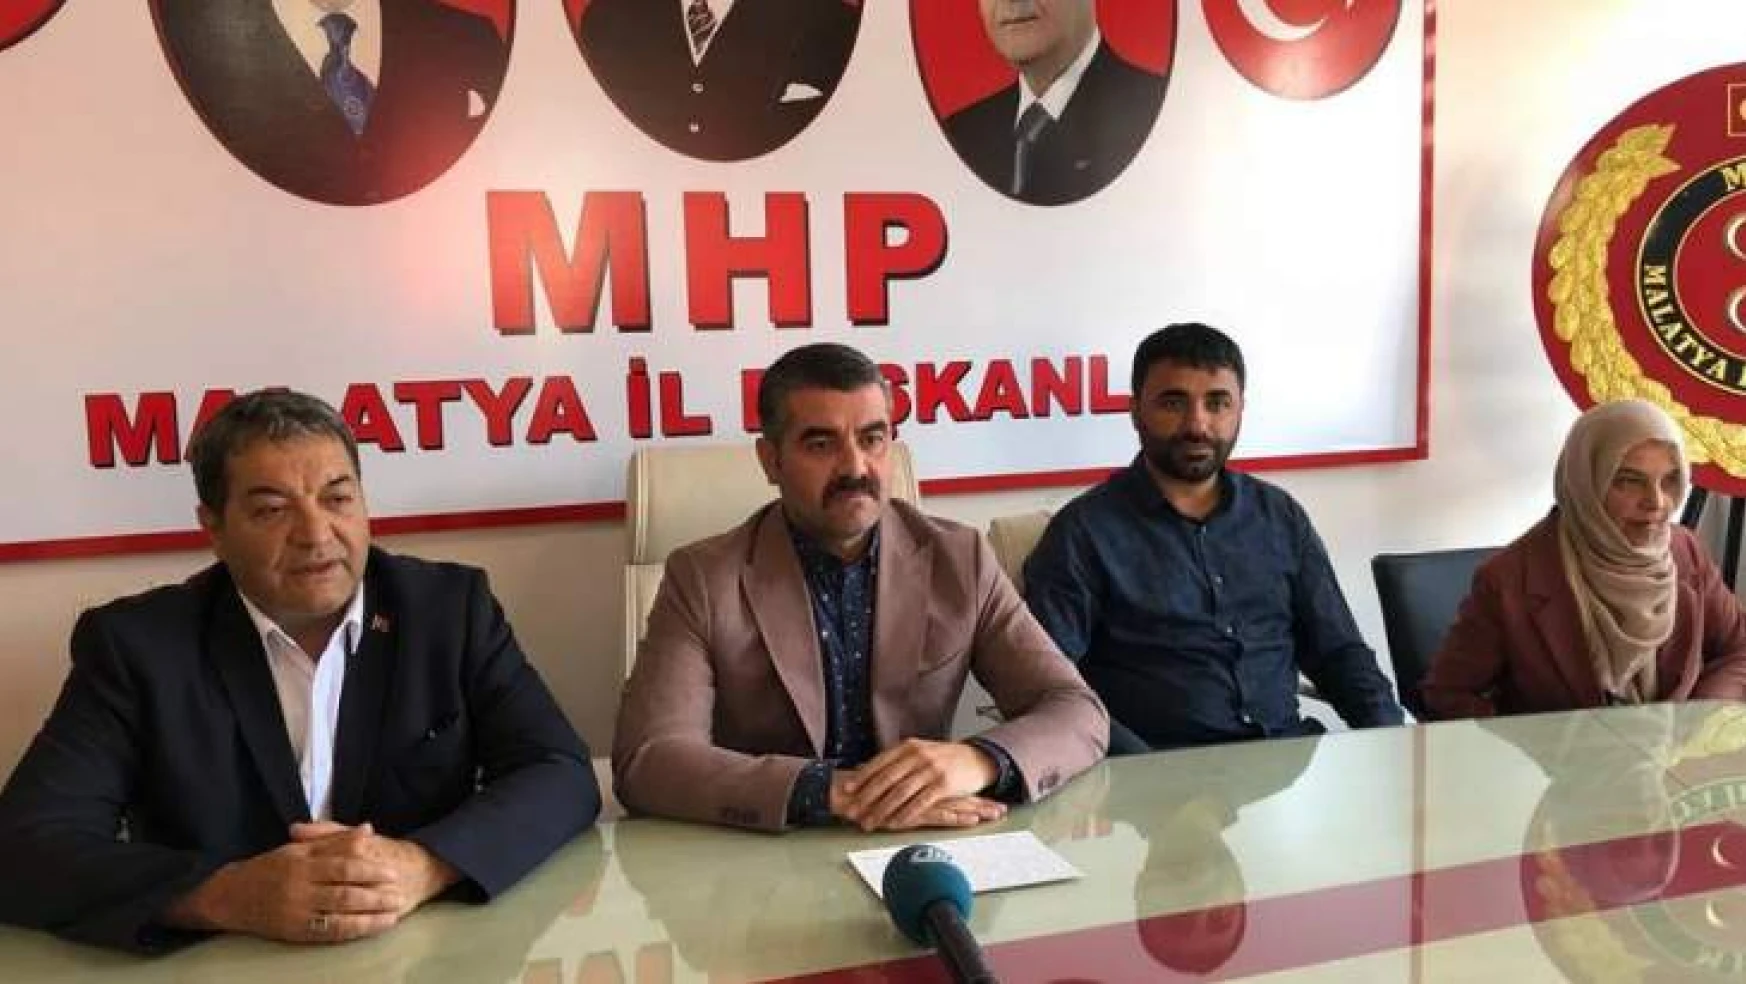 MHP Malatya'da Bayramlaşma